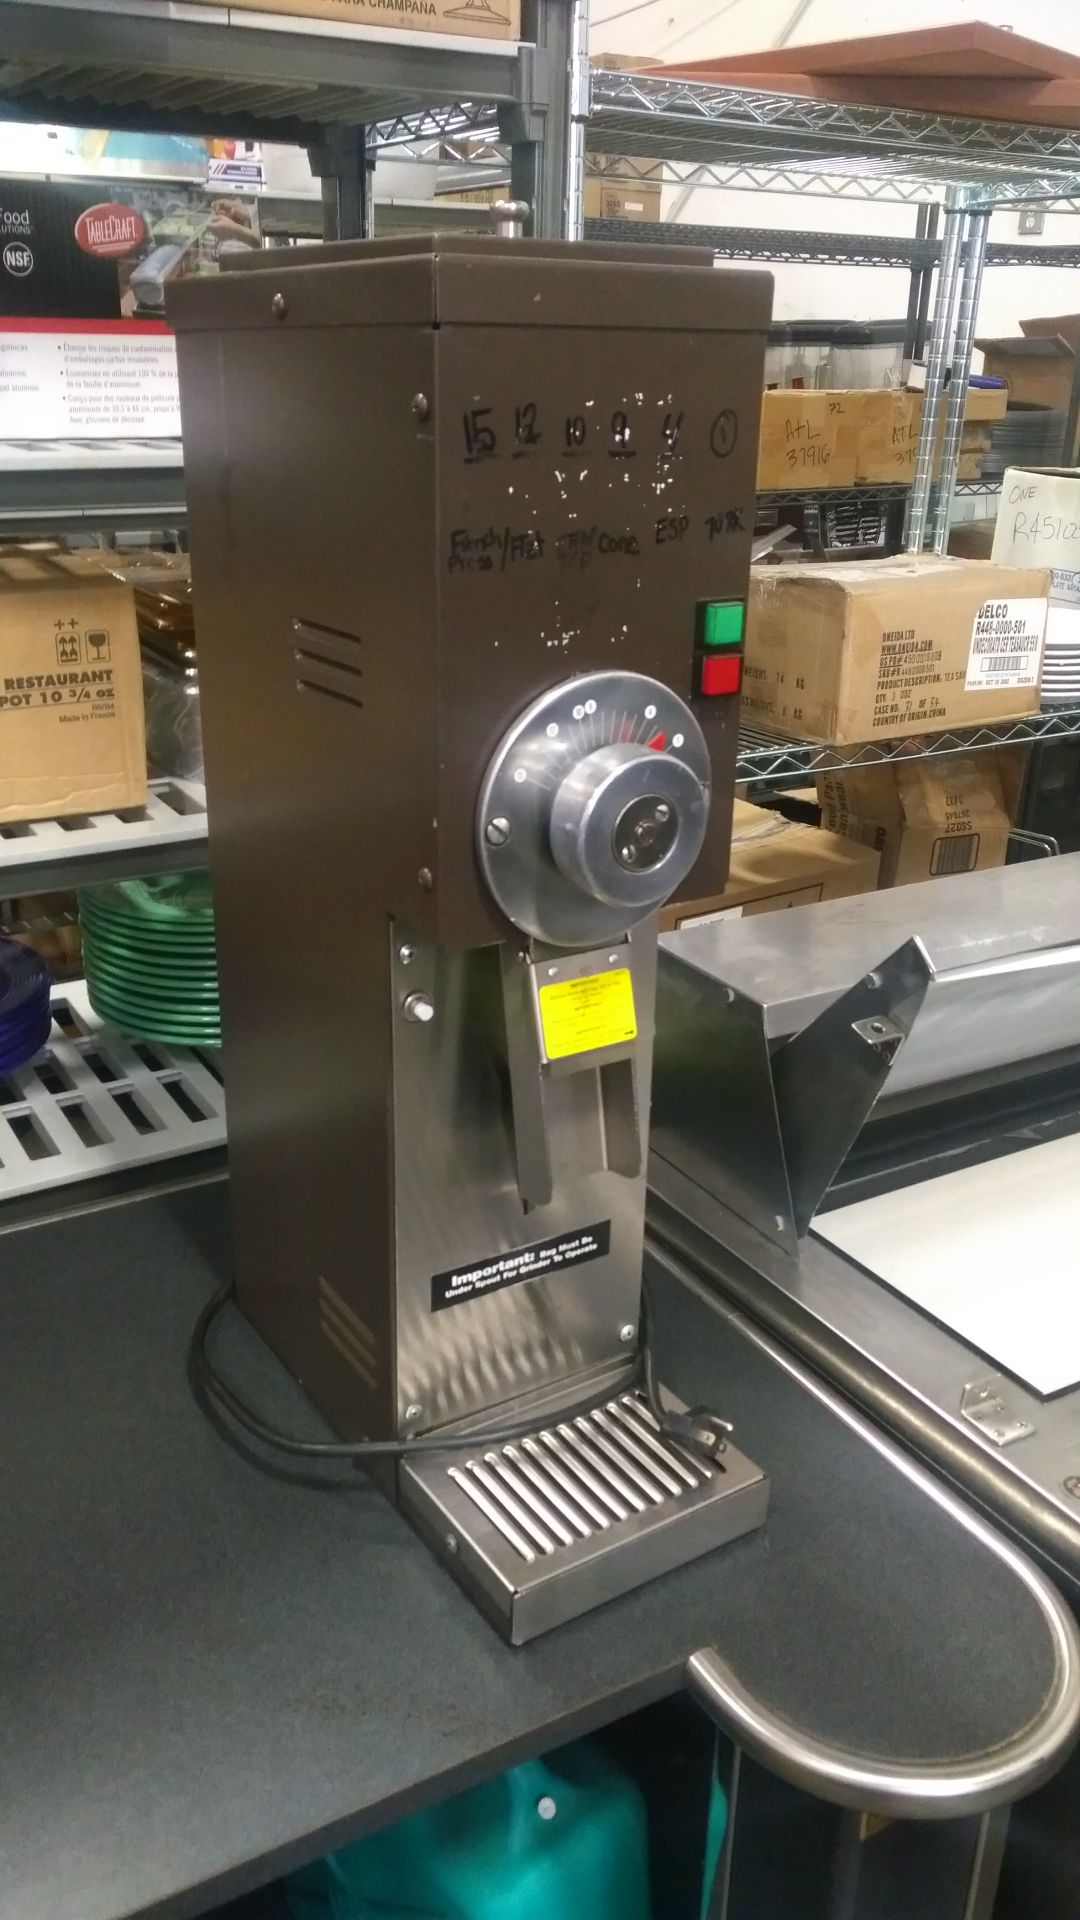 Grindmaster 890 5lb Coffee Grinder 120v, tested/working